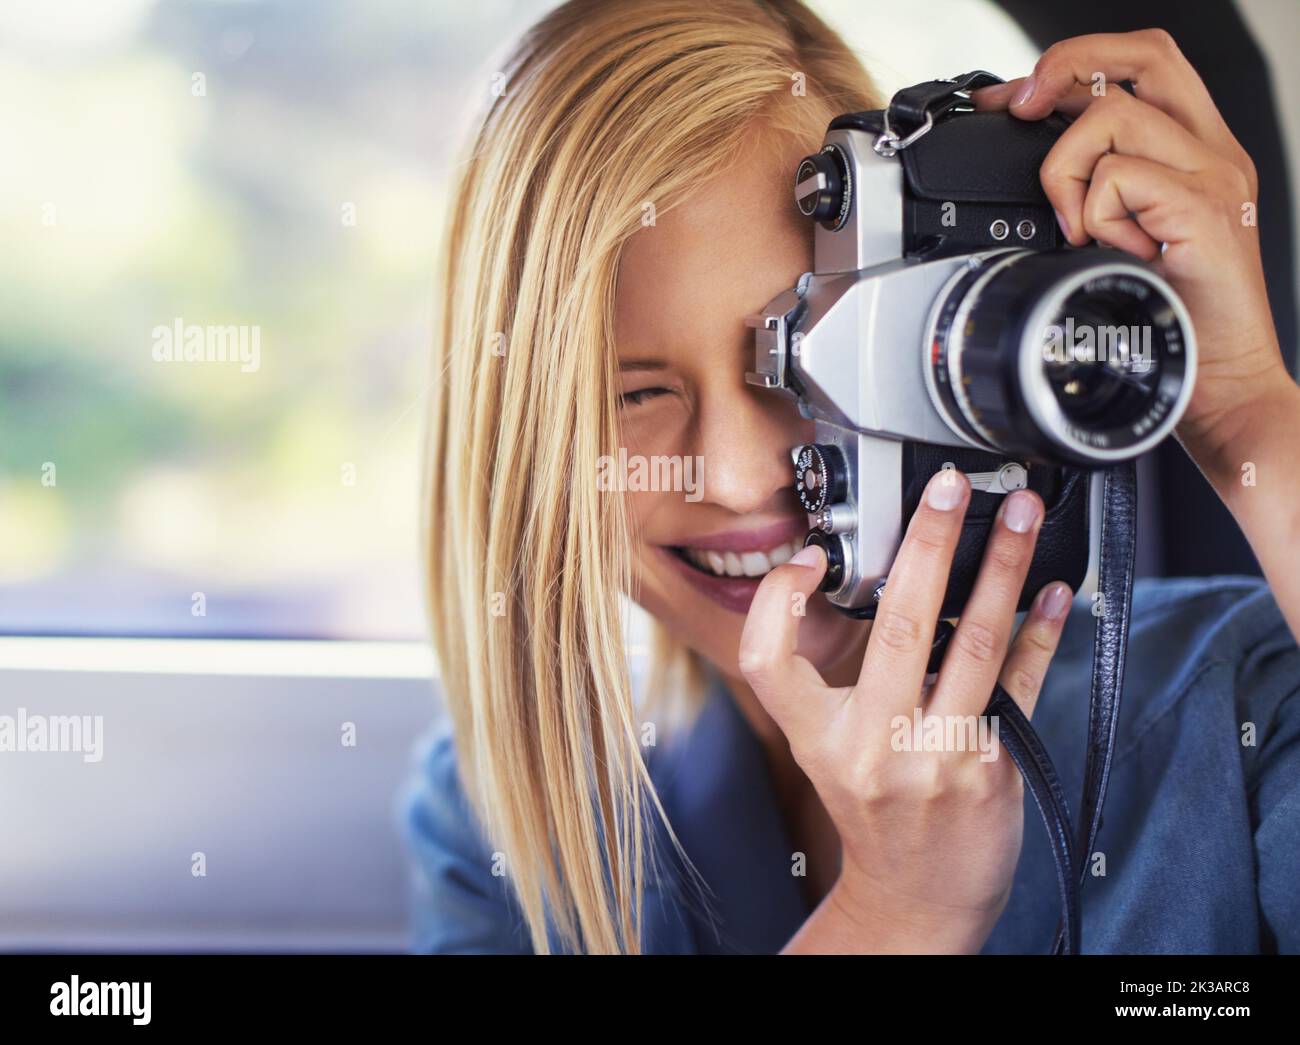 Die perfekte Momentaufnahme. Eine attraktive junge Frau, die in einem Auto sitzt und mit einer alten Kamera fotografiert. Stockfoto